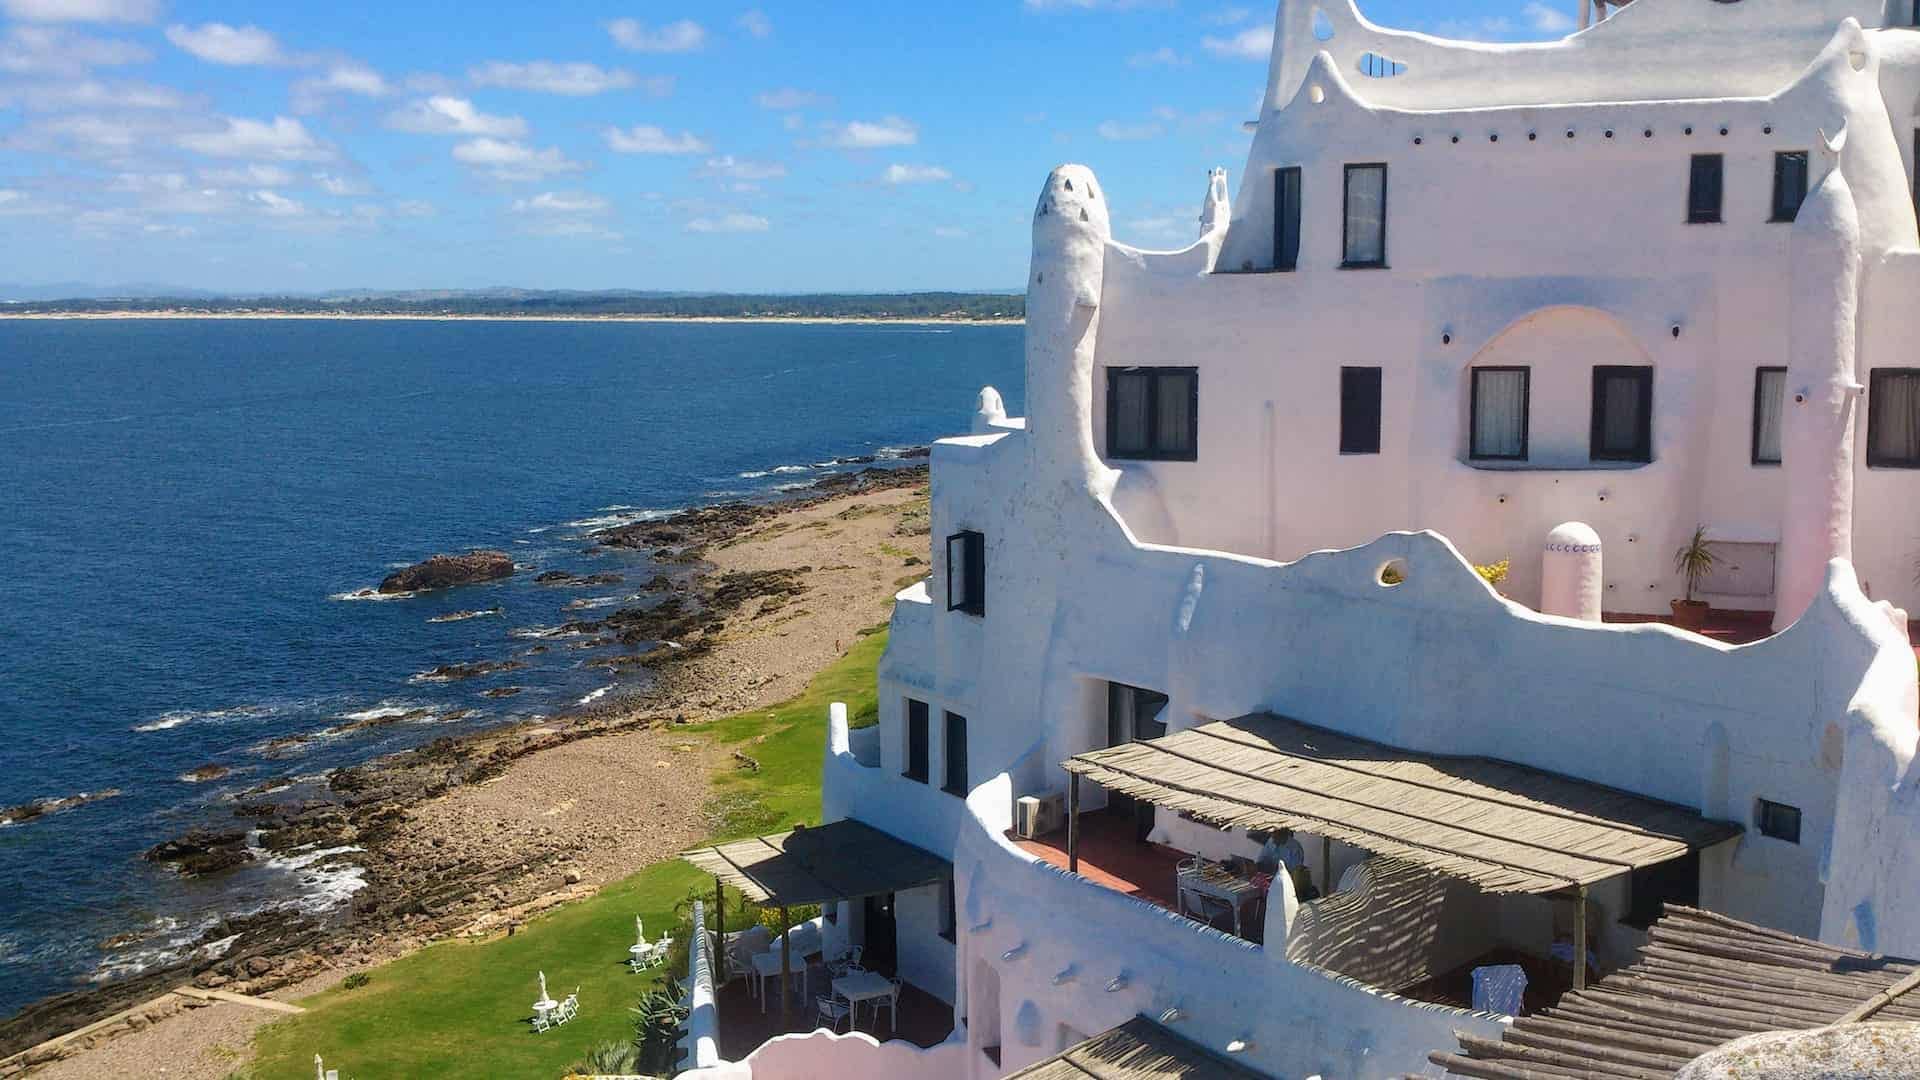 Resort in Punta del Este, Maldonado, Uruguay